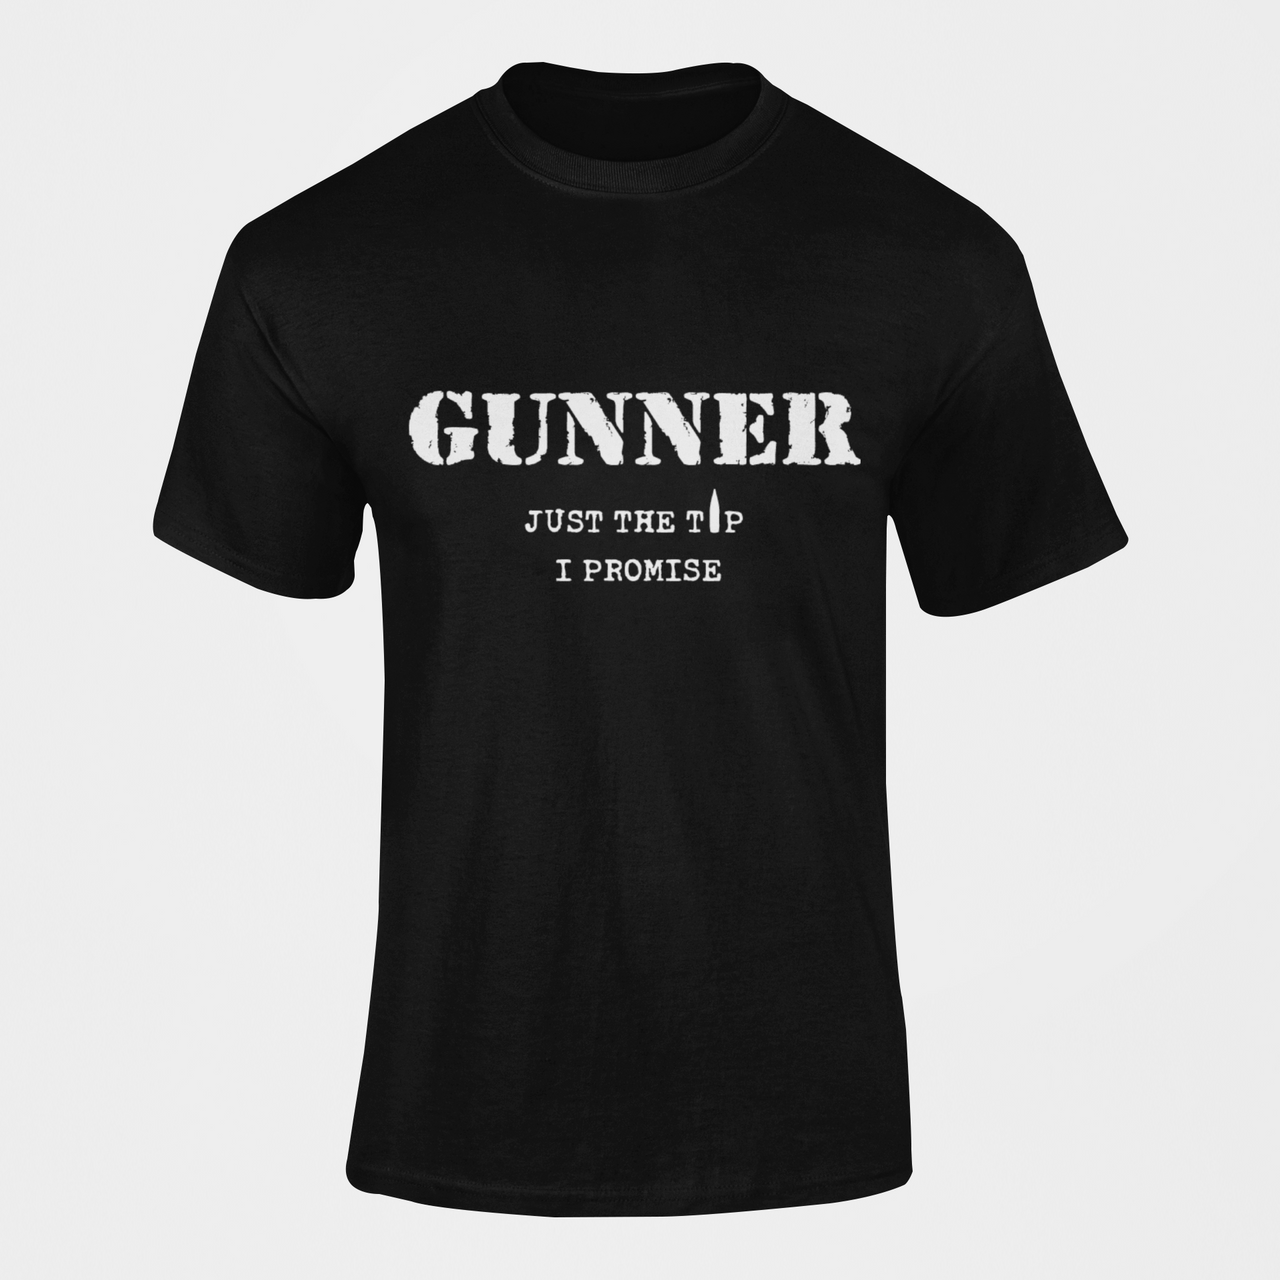 Gunner T-shirt - Just the Tip, I Promise (Men)